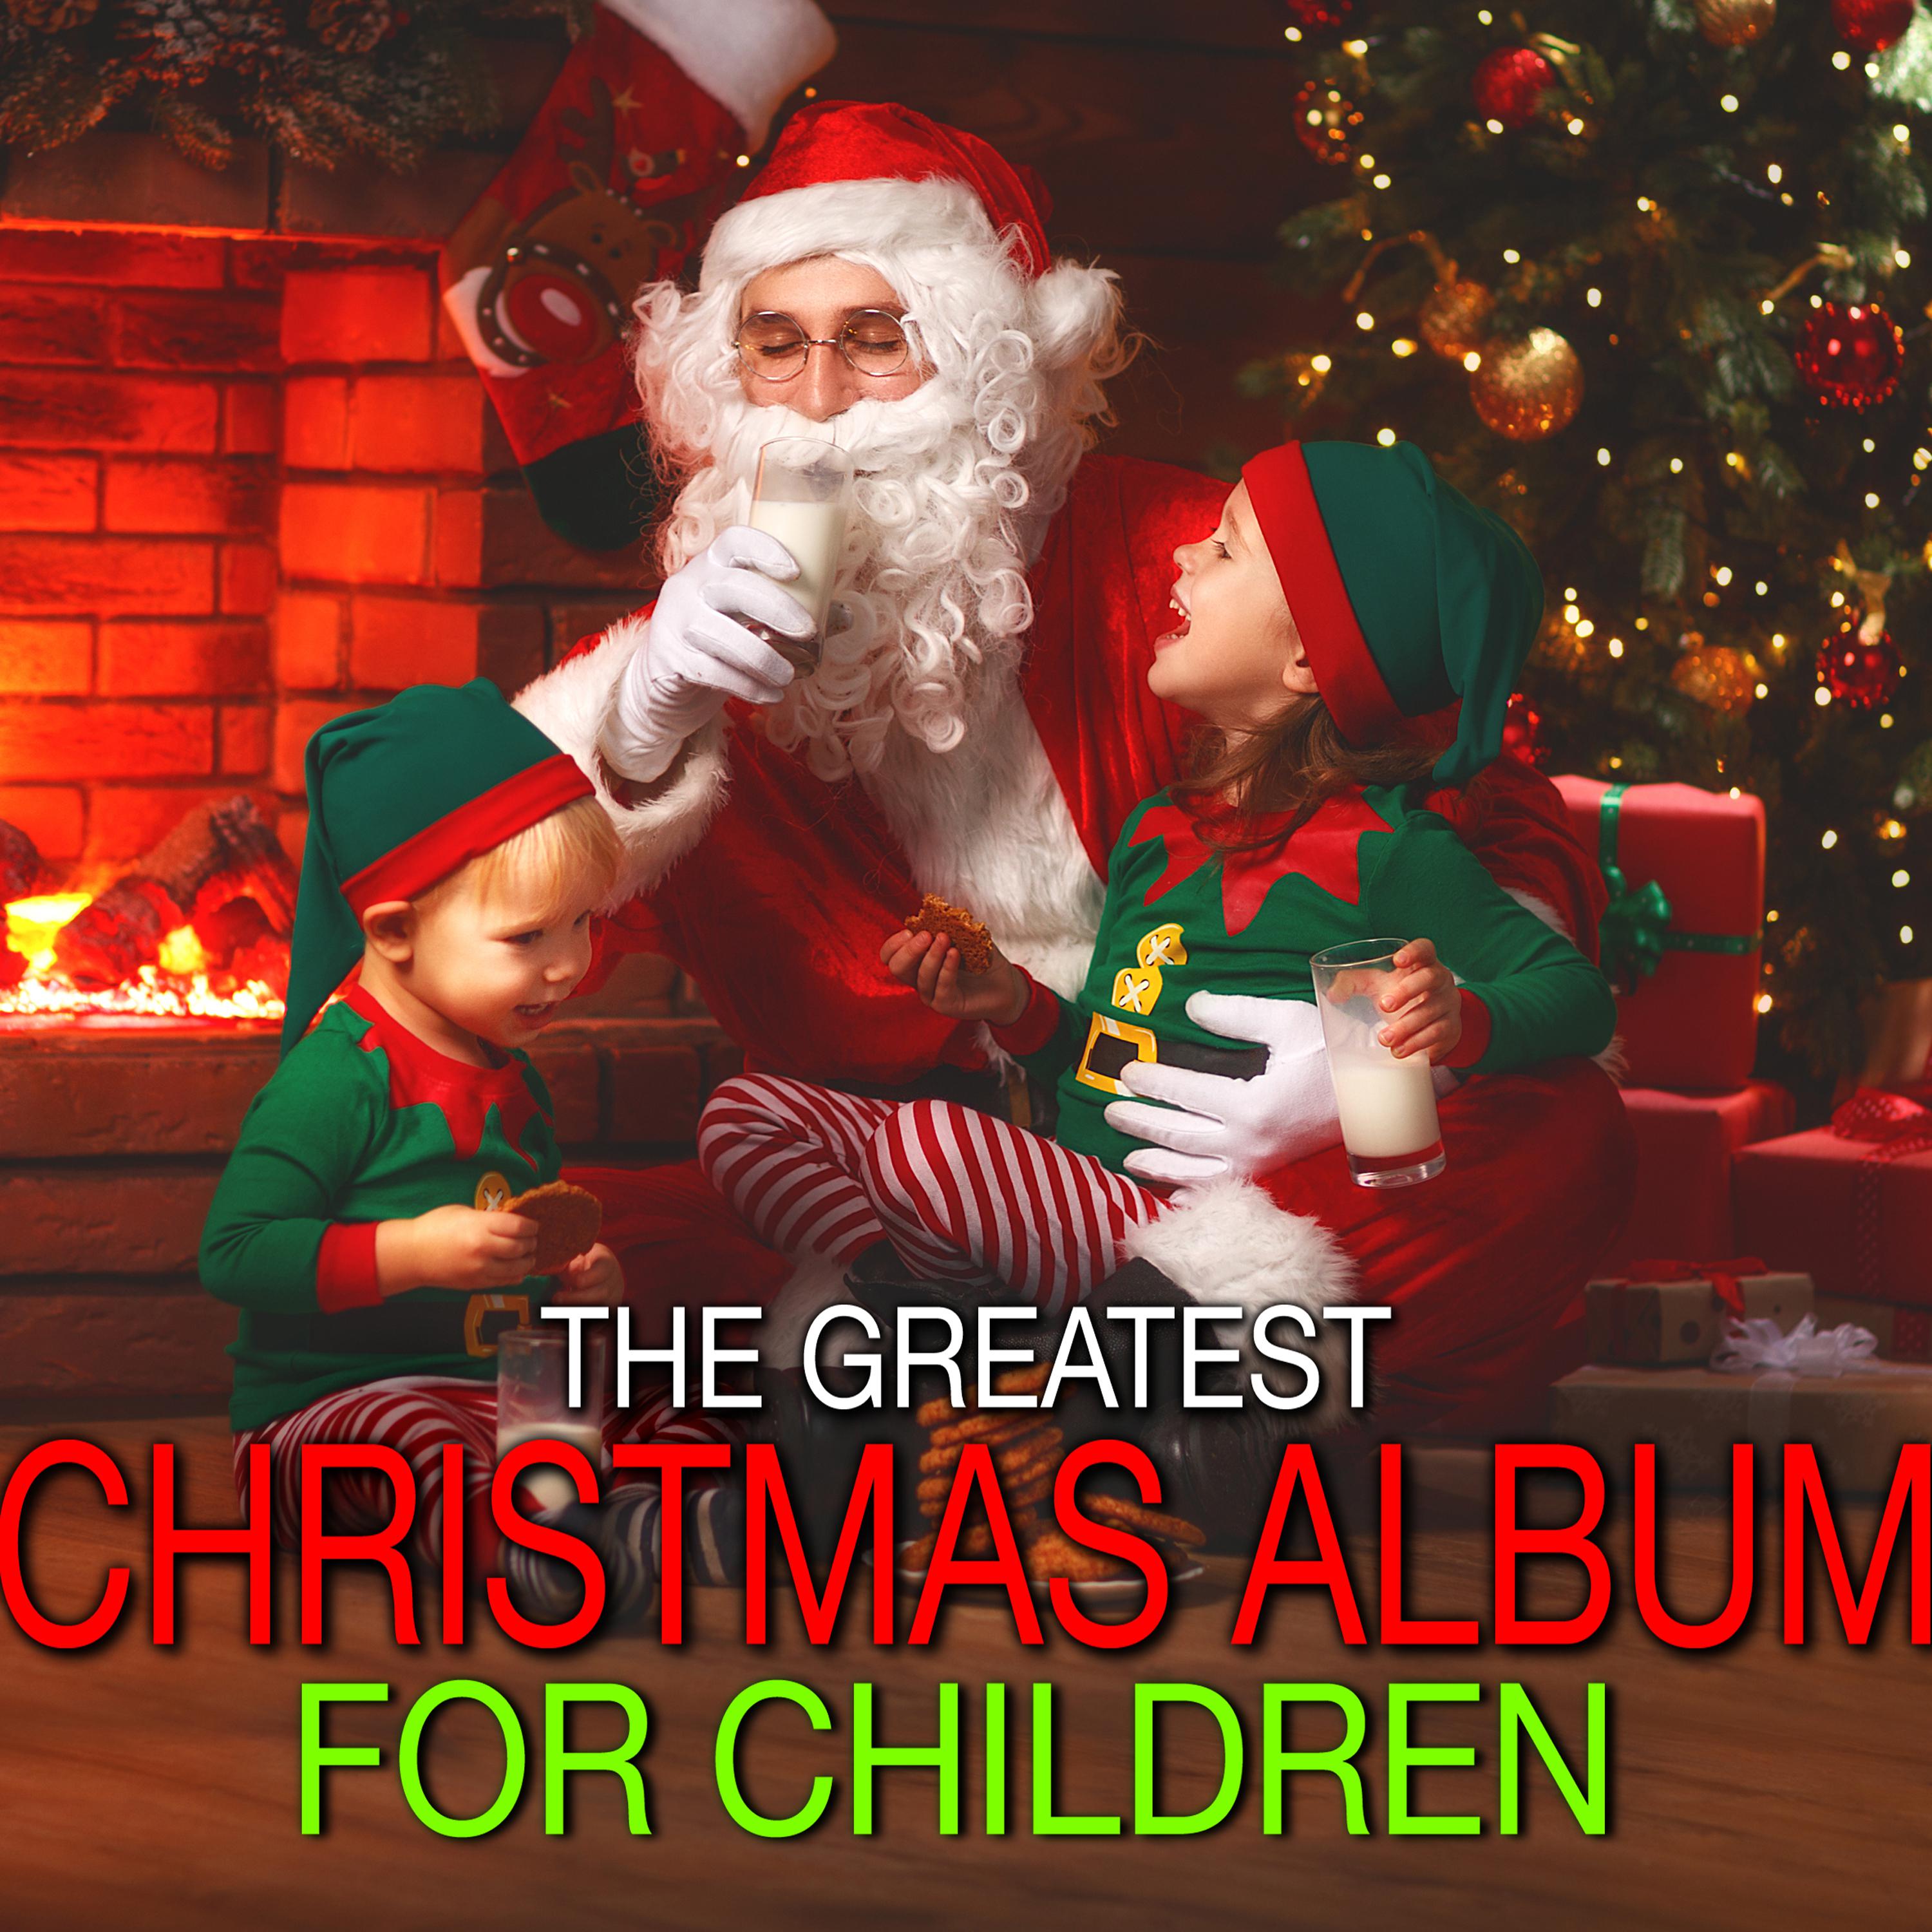 The Greatest Christmas Album For Children